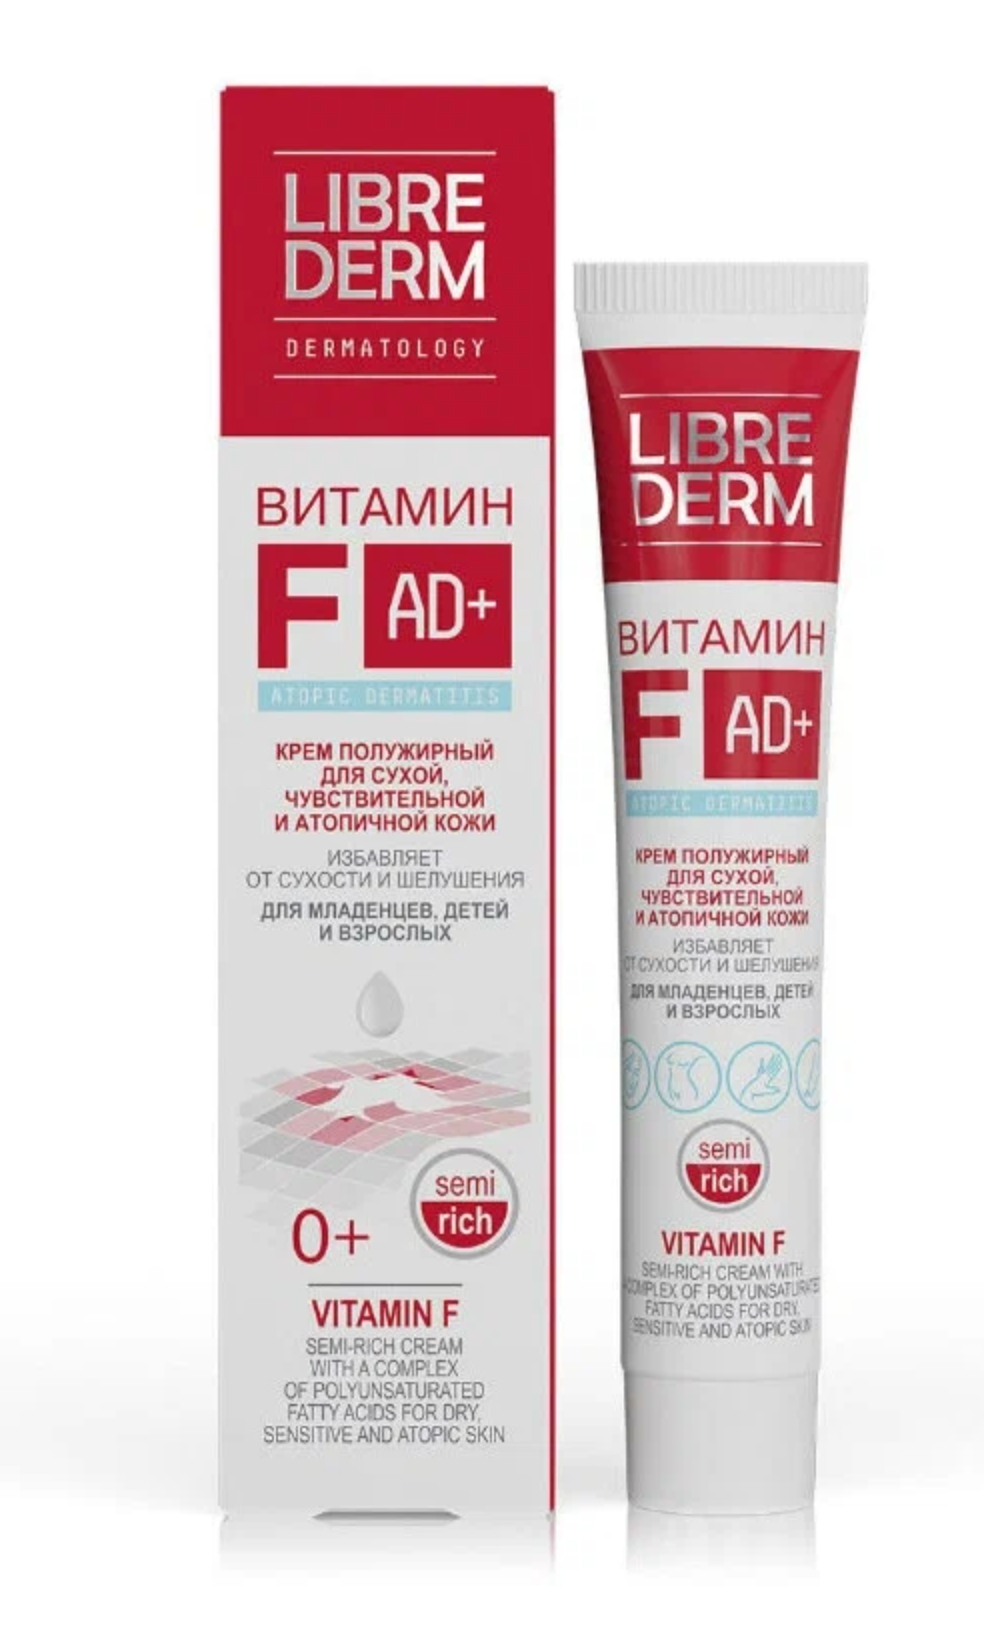 Librederm Vitamin F Cream Semi-Rich Крем для лица витамин F 